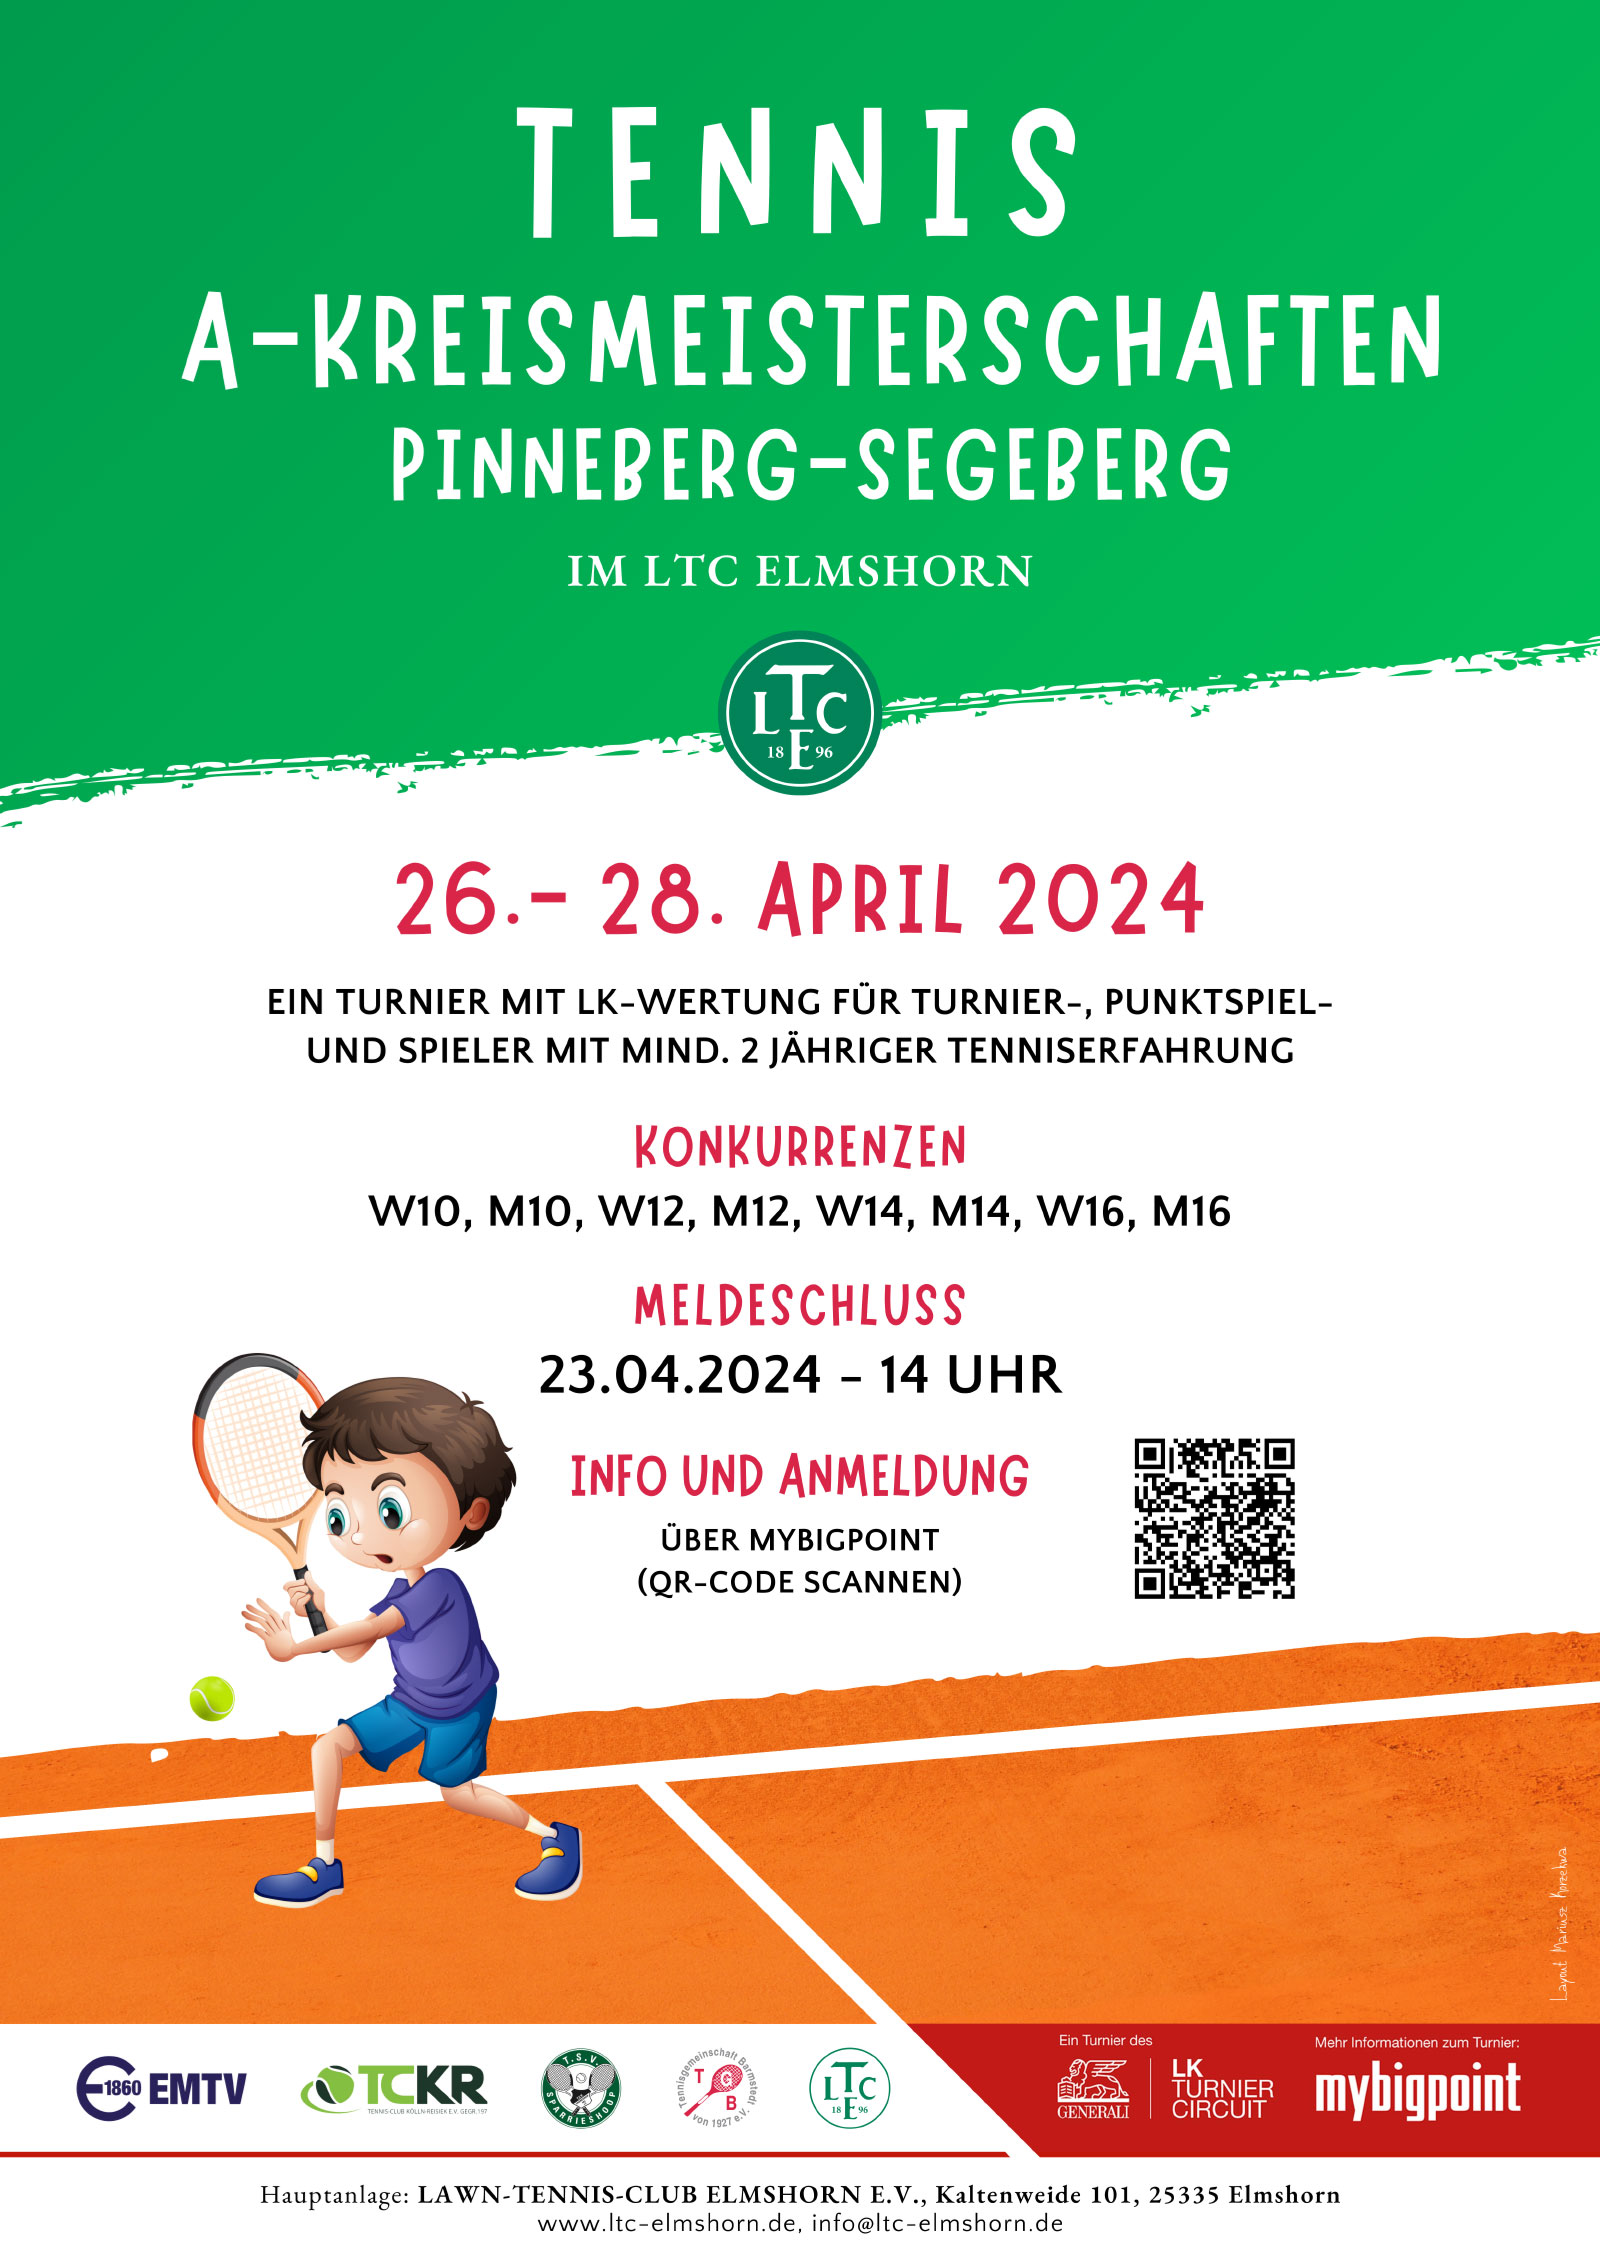 Tennis A-Kreismeisterschaften  Pinneberg-Segeberg im LTCE